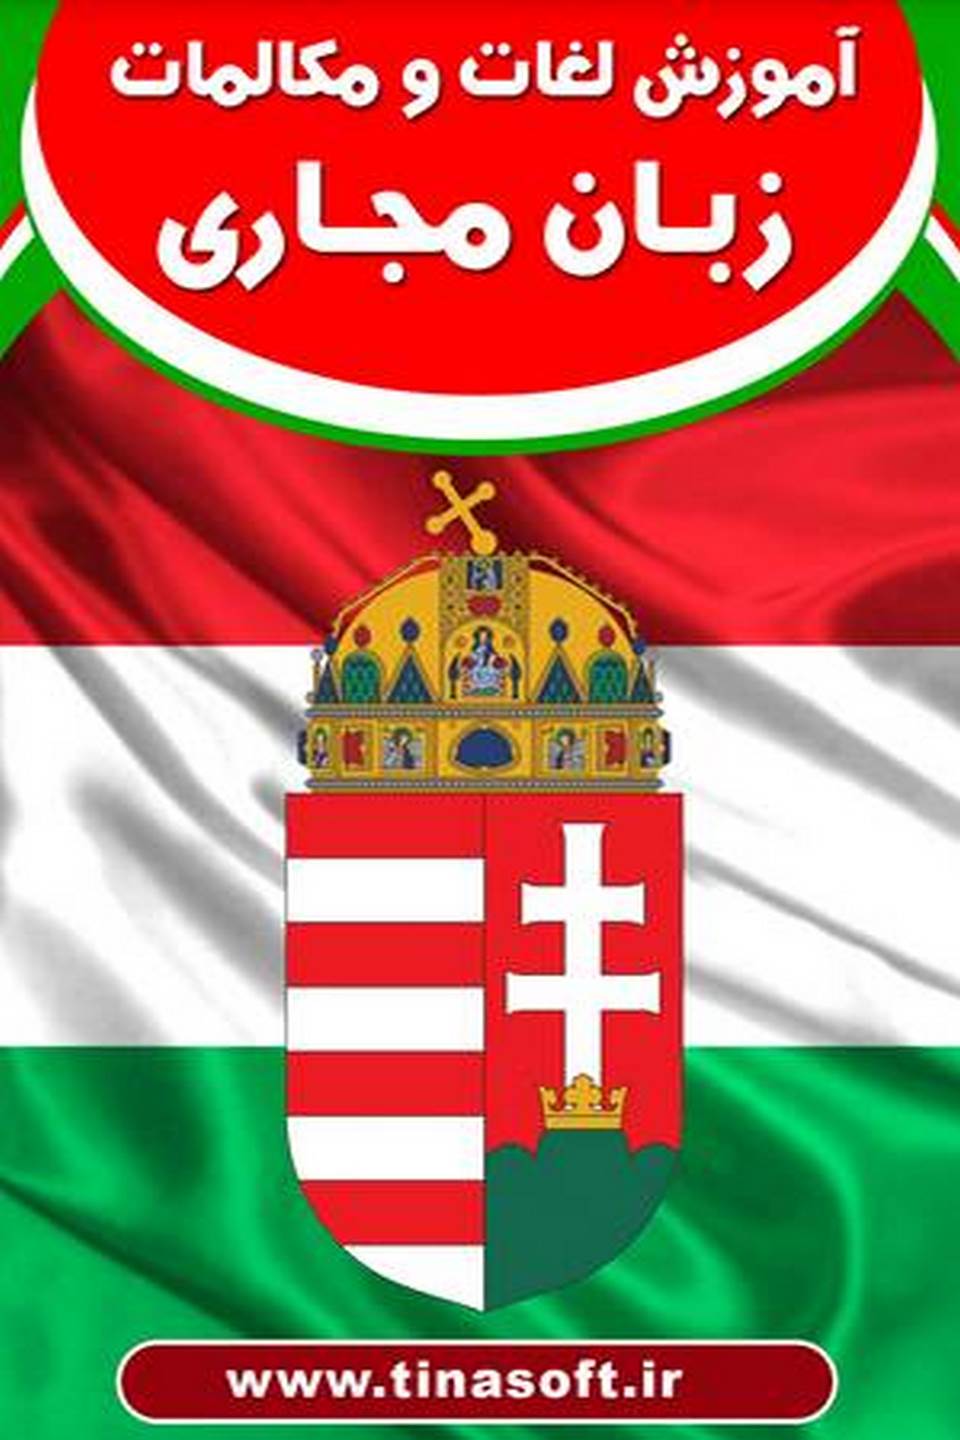 آموزش لغات و مکالمات زبان مجاری